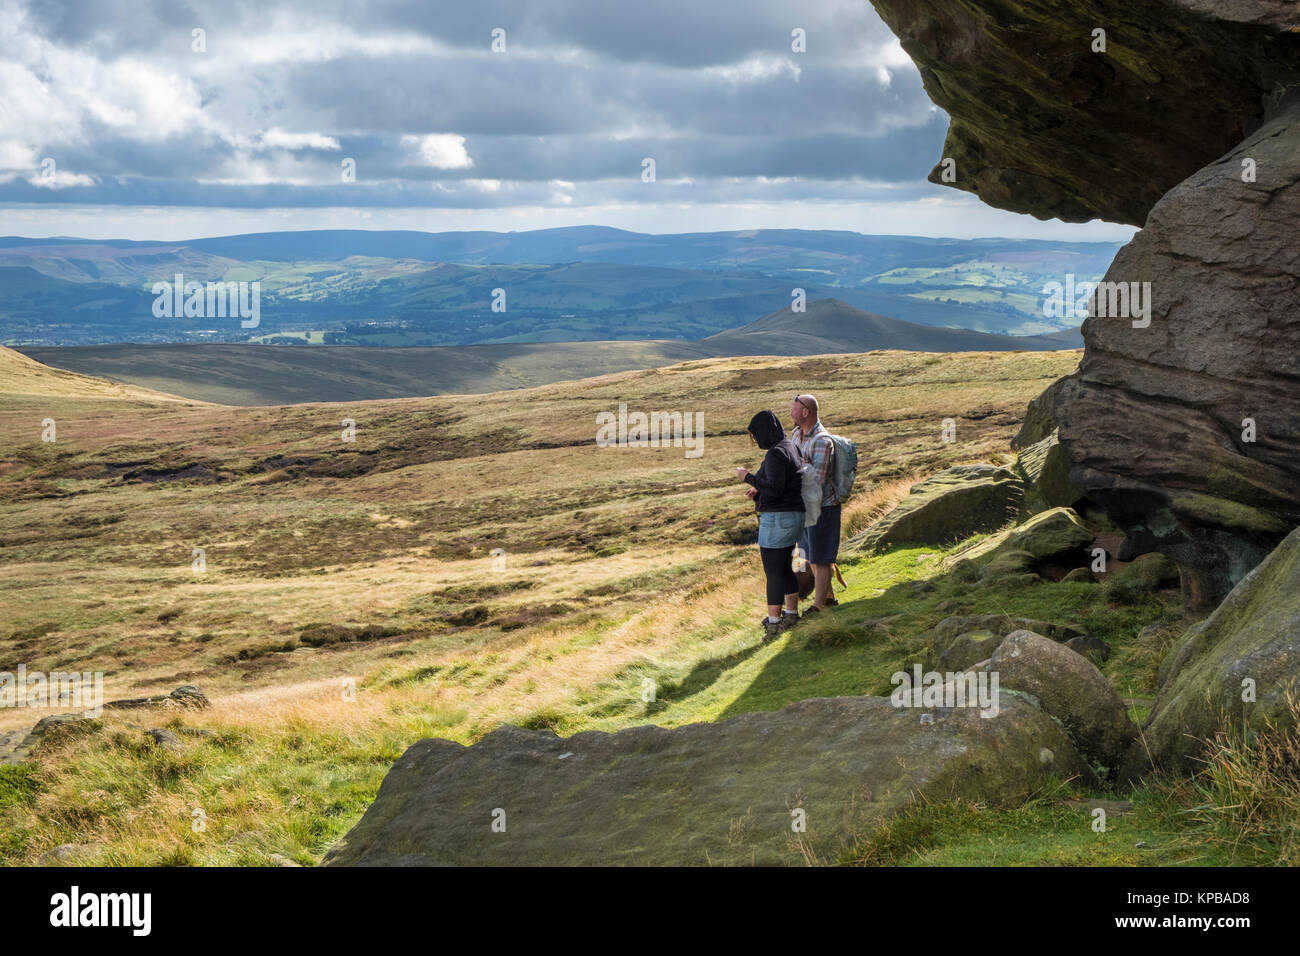 Walkers vicino a Edale rocce visualizzazione della brughiera scenario e la paesaggistica campagna viste, Kinder Scout, Derbyshire, Peak District, England, Regno Unito Foto Stock